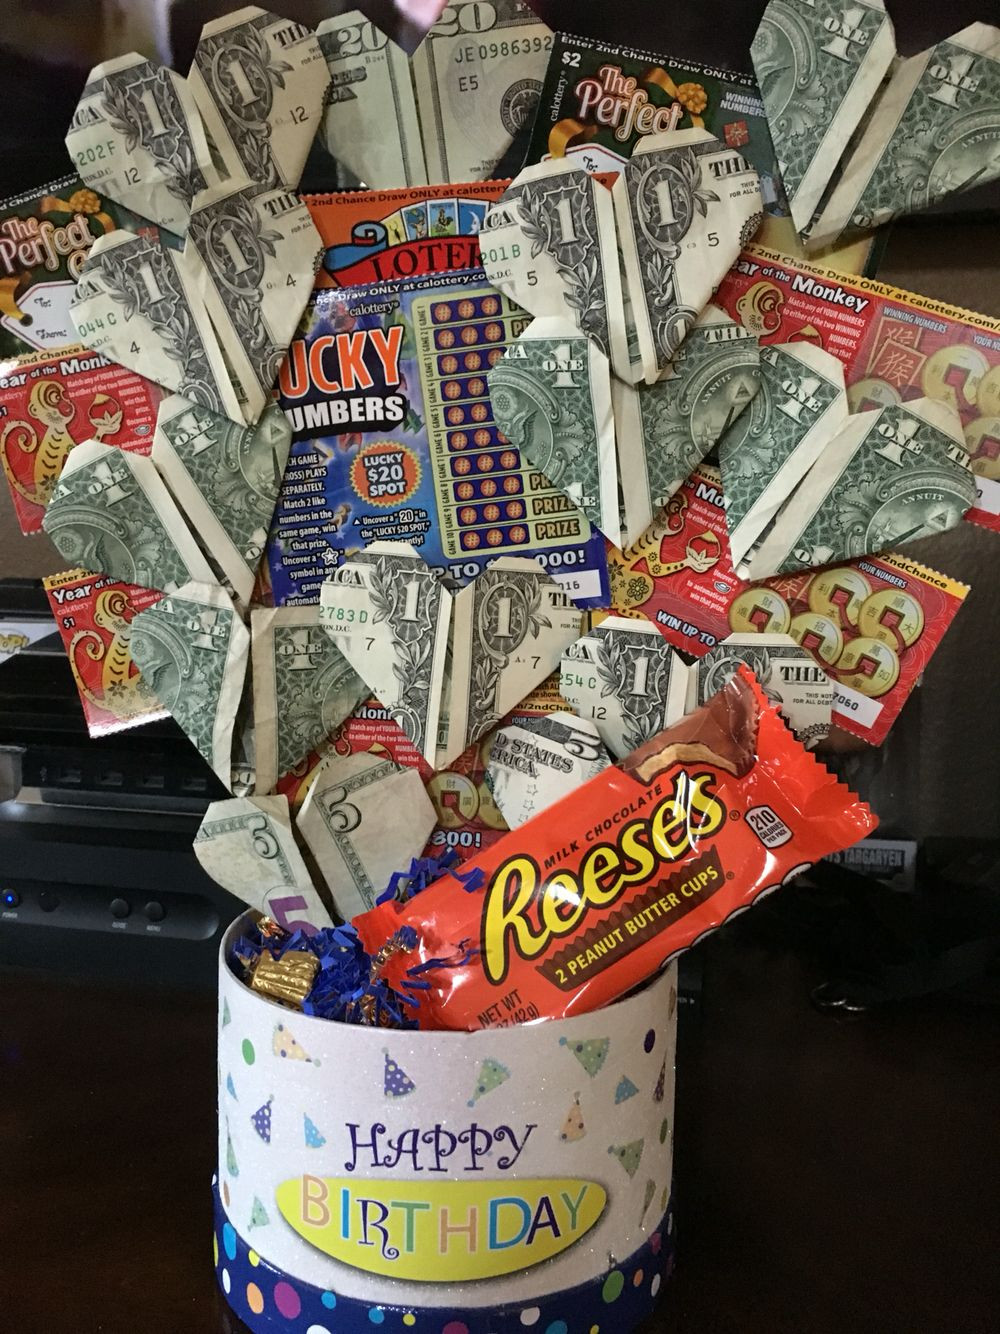 18Th Birthday Gift Ideas For Boyfriend
 18th Birthday present